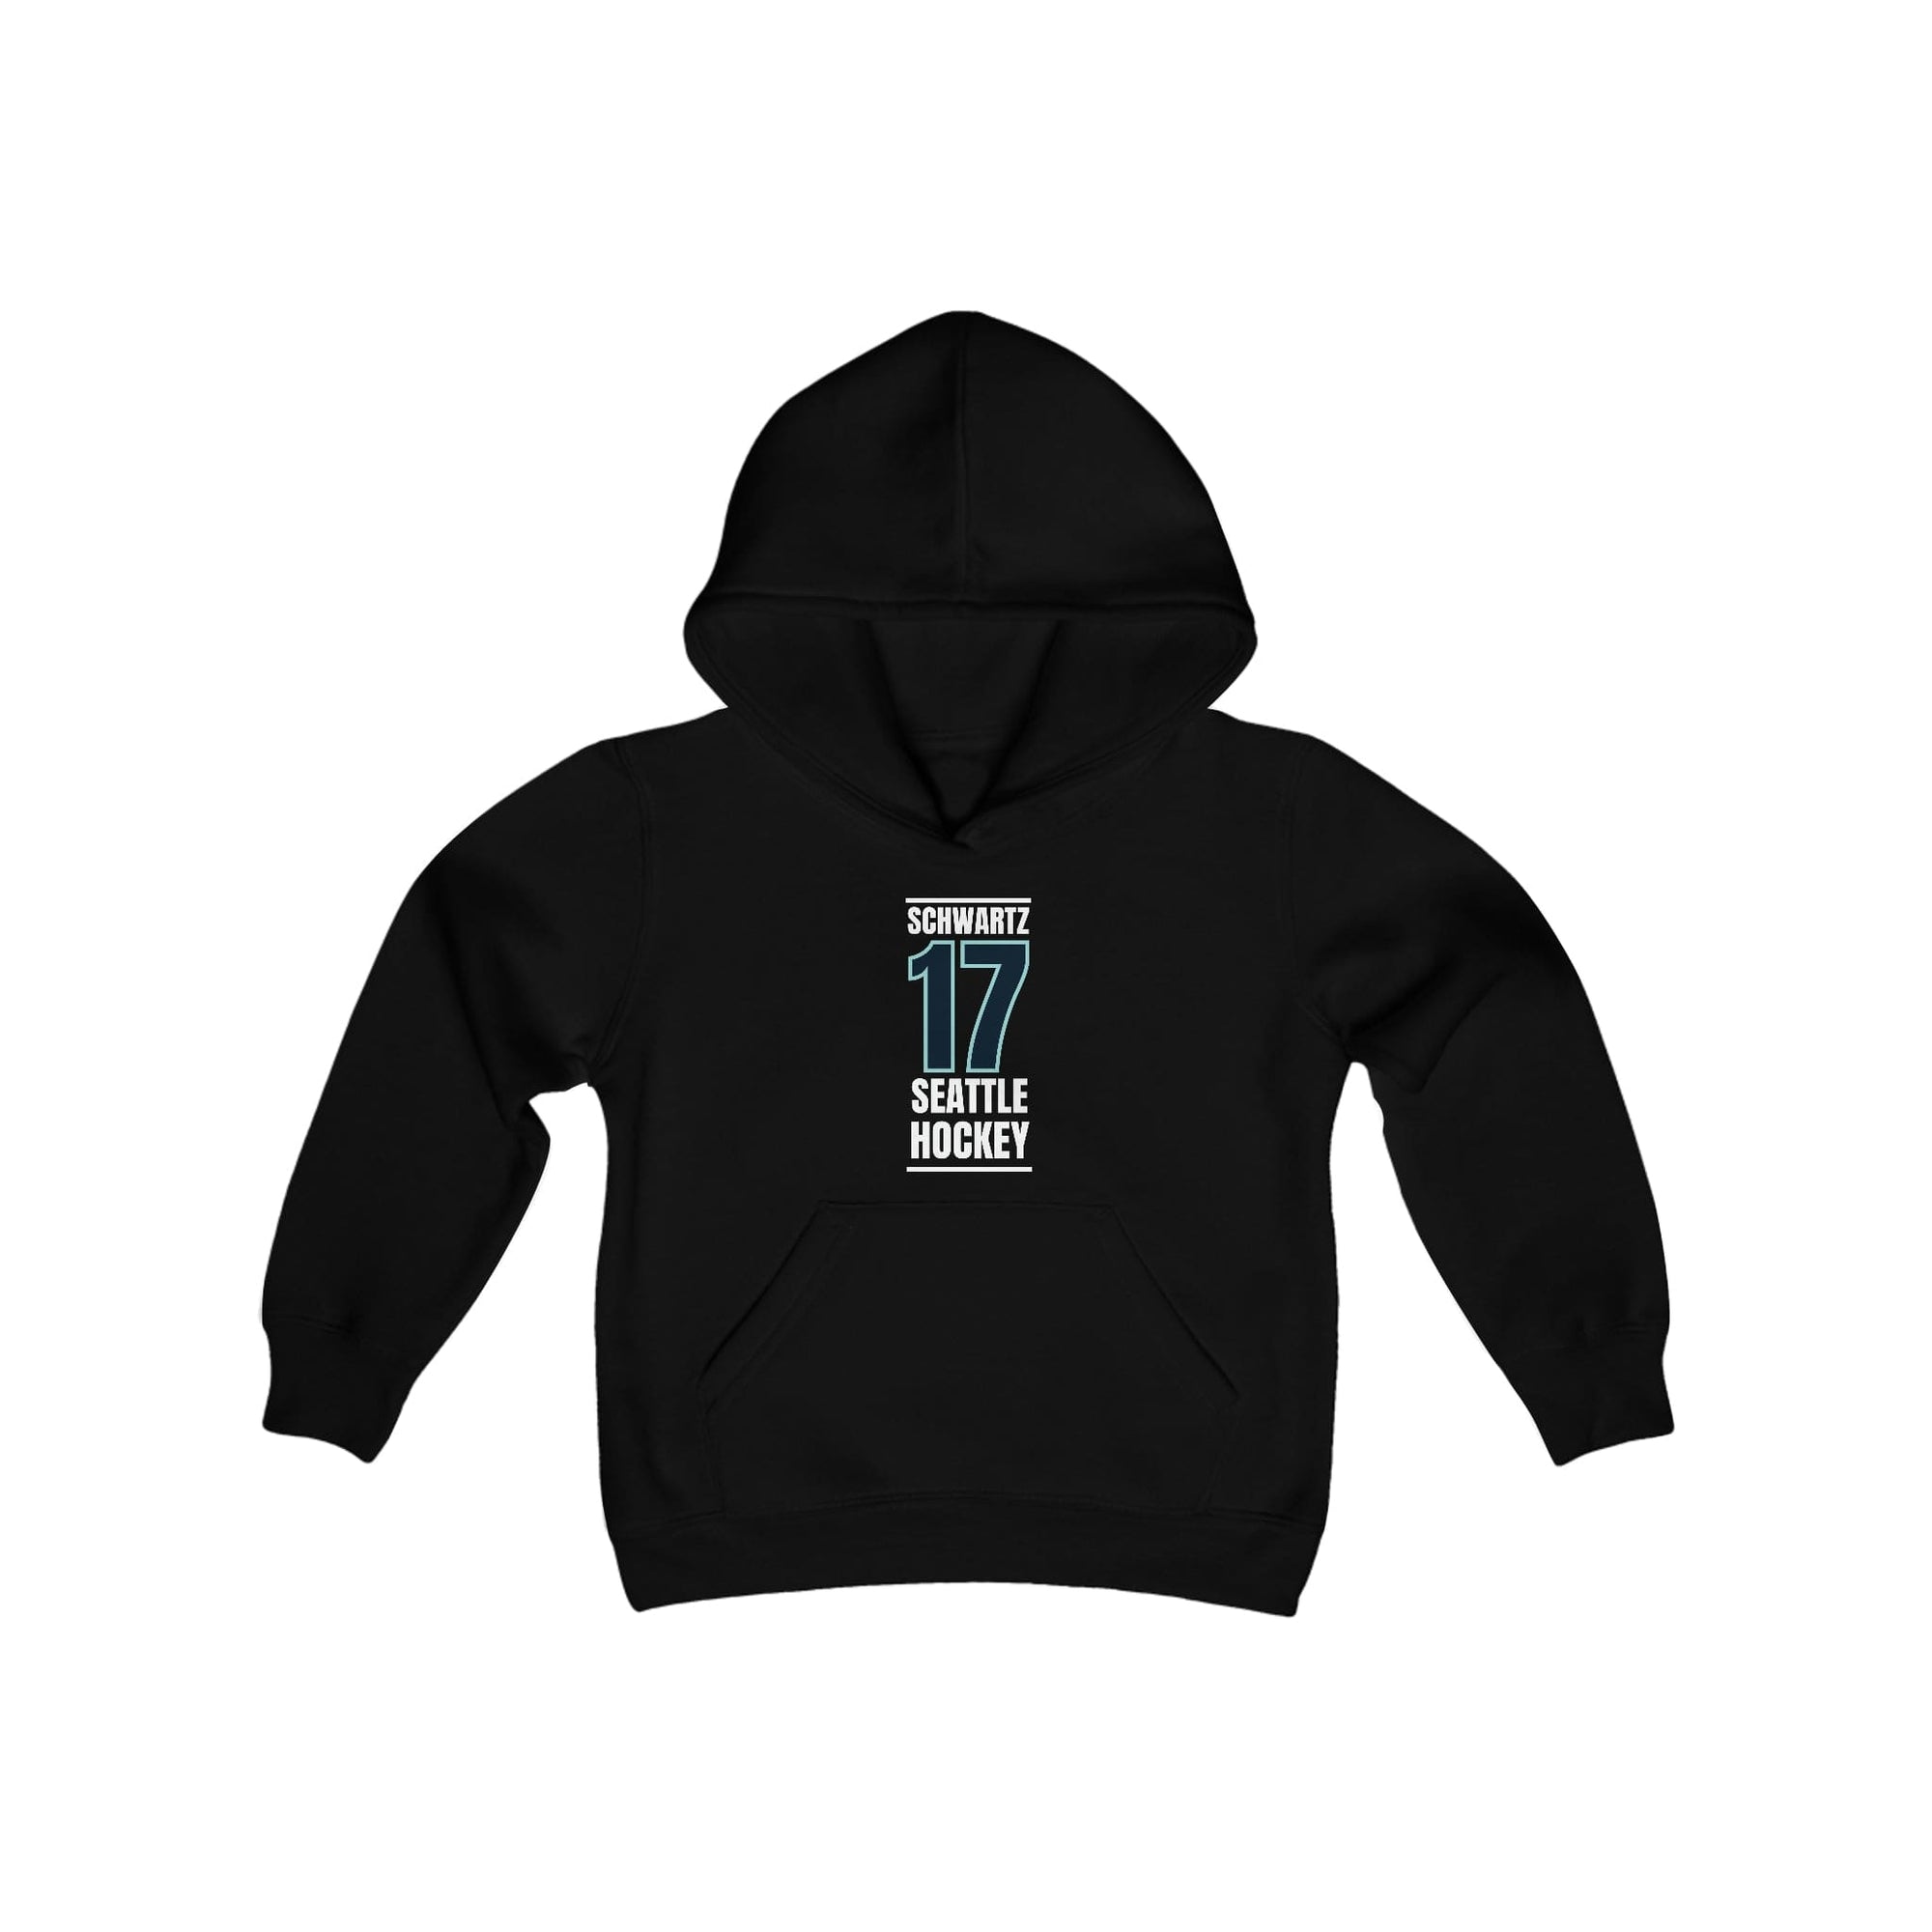 Kids clothes Schwartz 17 Seattle Hockey Black Vertical Design Youth Hooded Sweatshirt